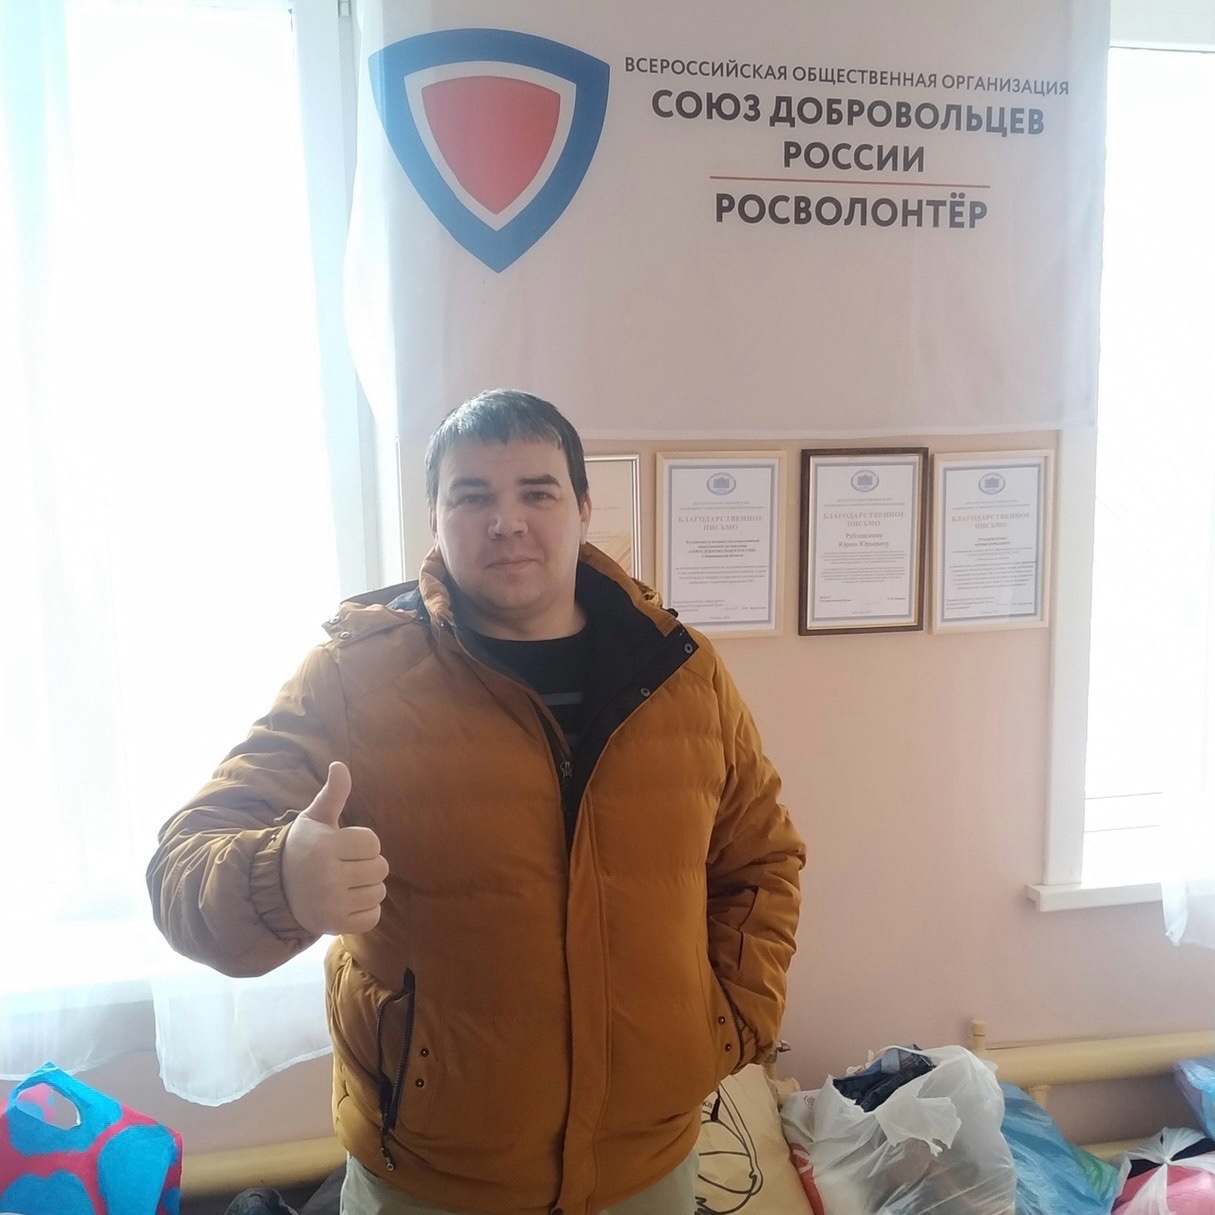 Воронежские добровольцы передали вещи и продукты многодетным семьям